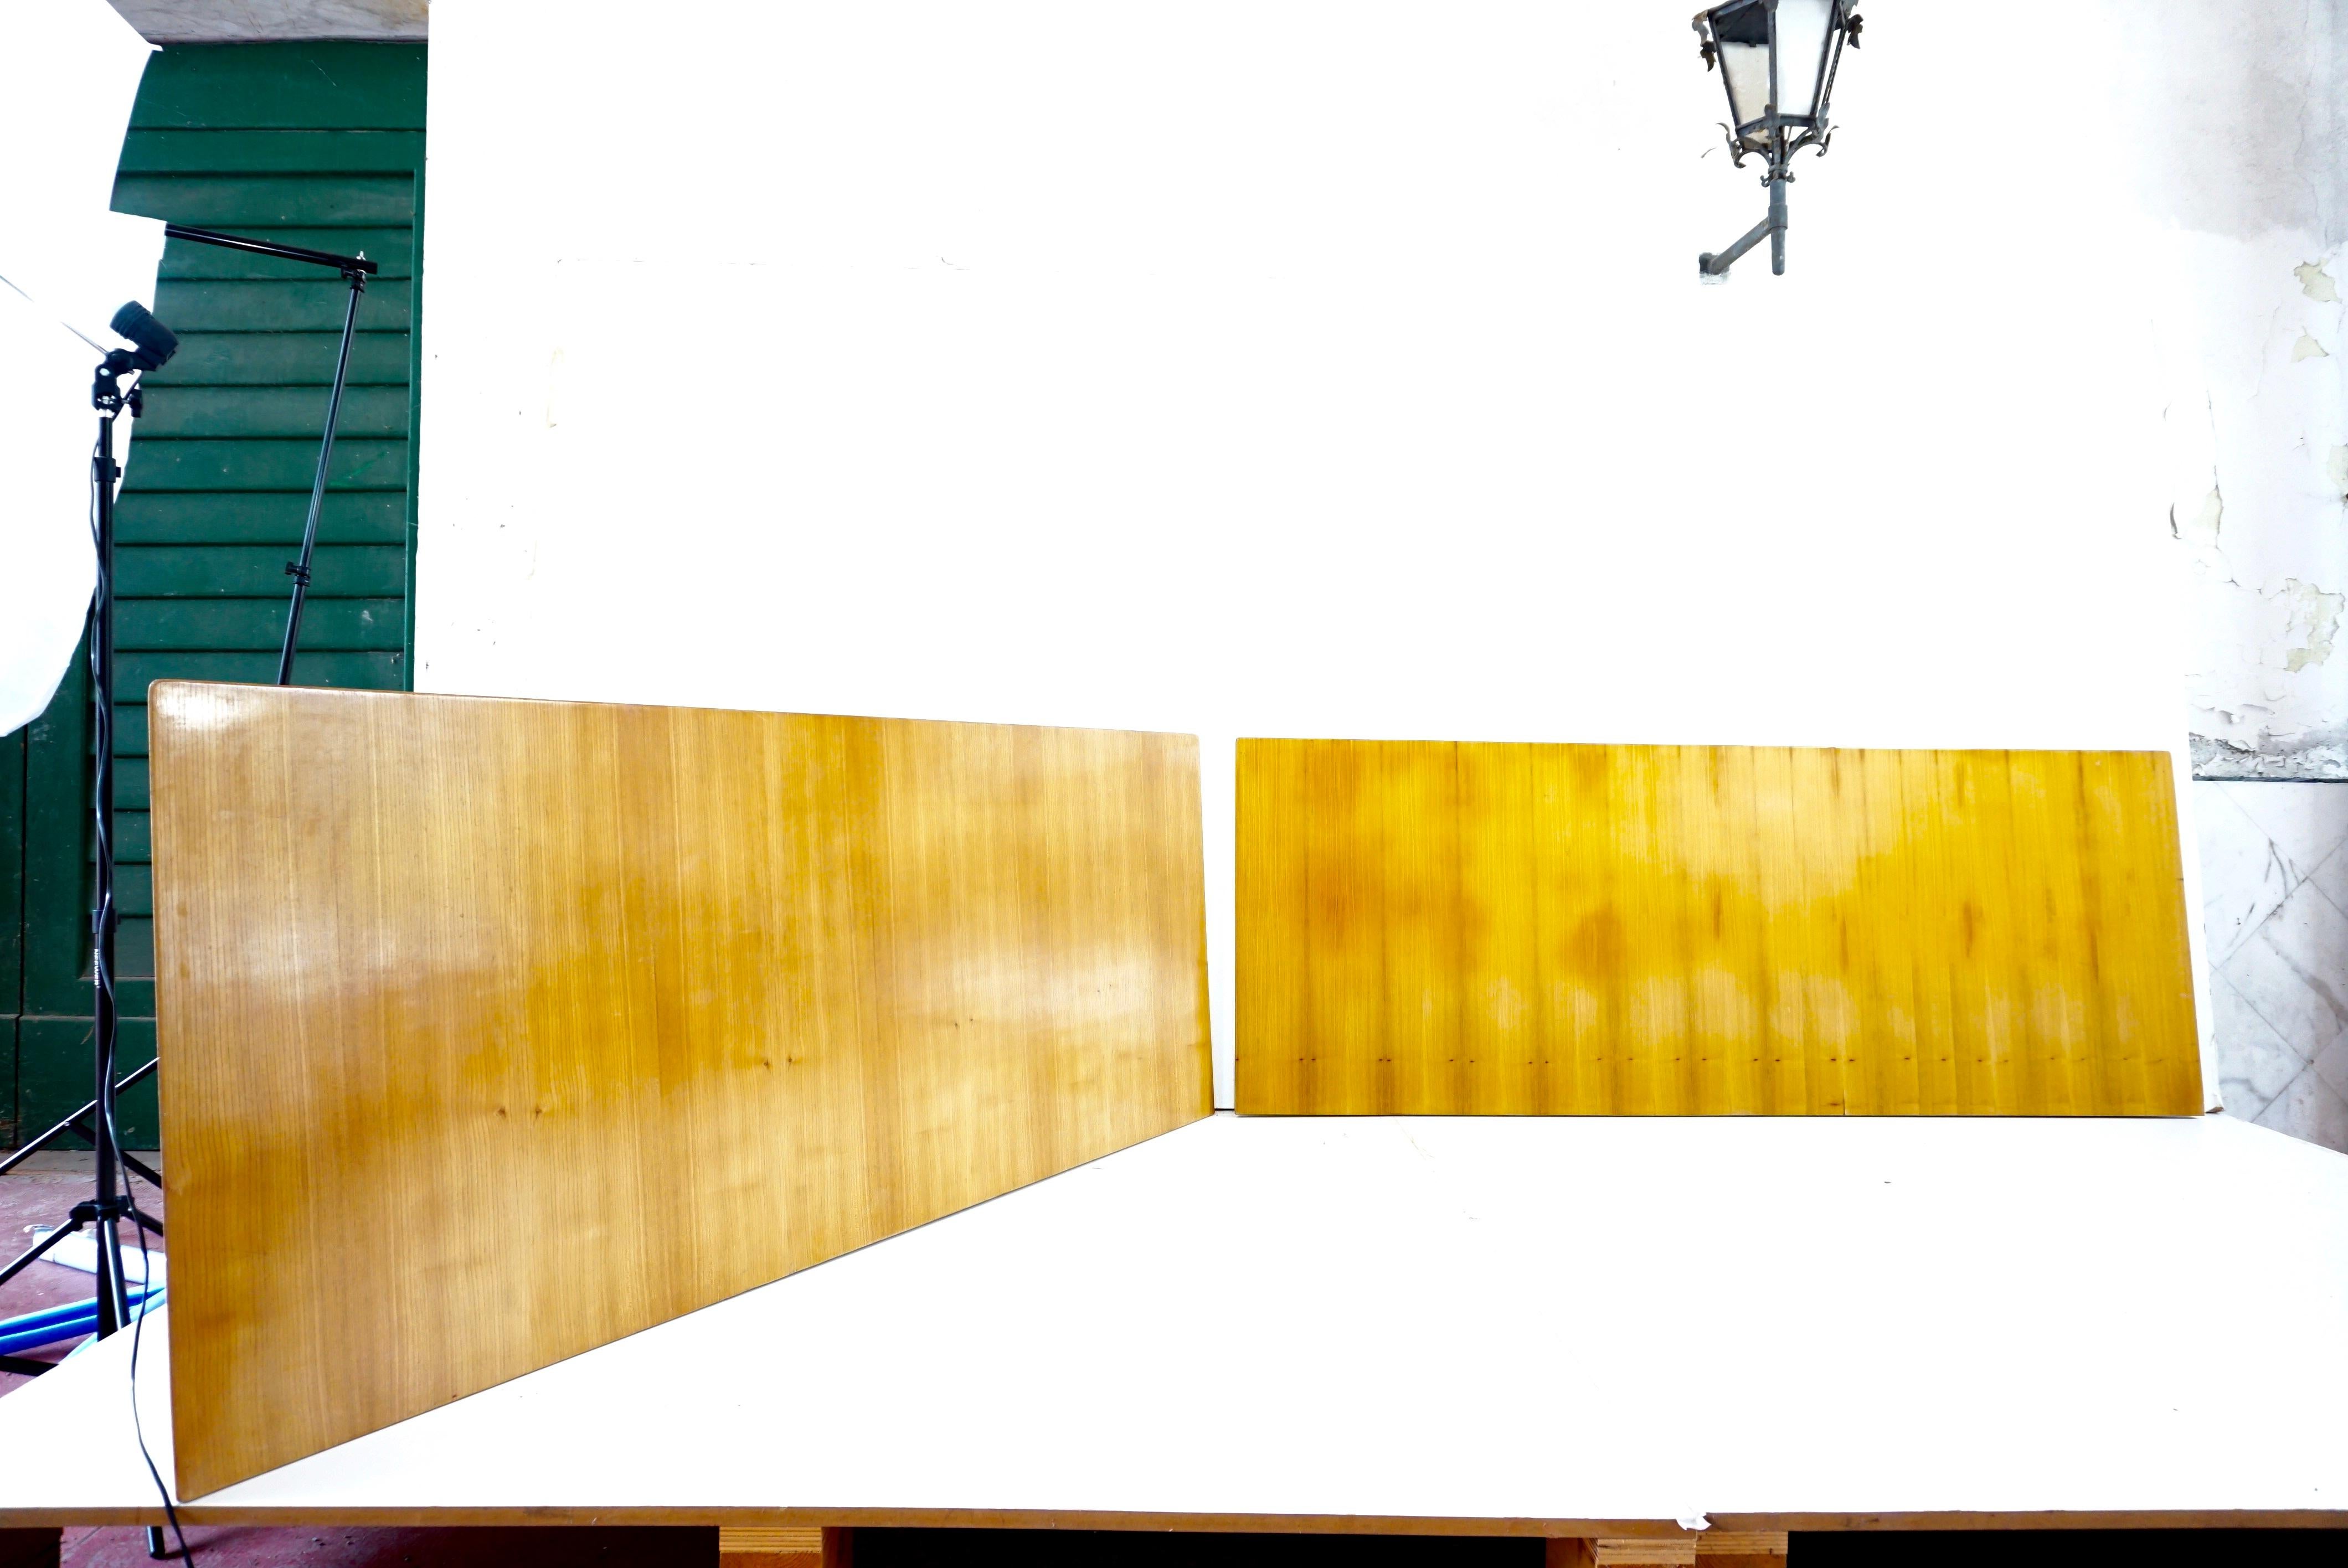 Paire de panneaux en bois uniques de Gio Ponti provenant du mobilier de l'Hôtel Royal à Naples, 1955.
Fabriqué par Giordano Chiesa by Dassi.
merisier
bord épais avec bec de hibou
ces pièces proviennent de l'ameublement d'origine des chambres